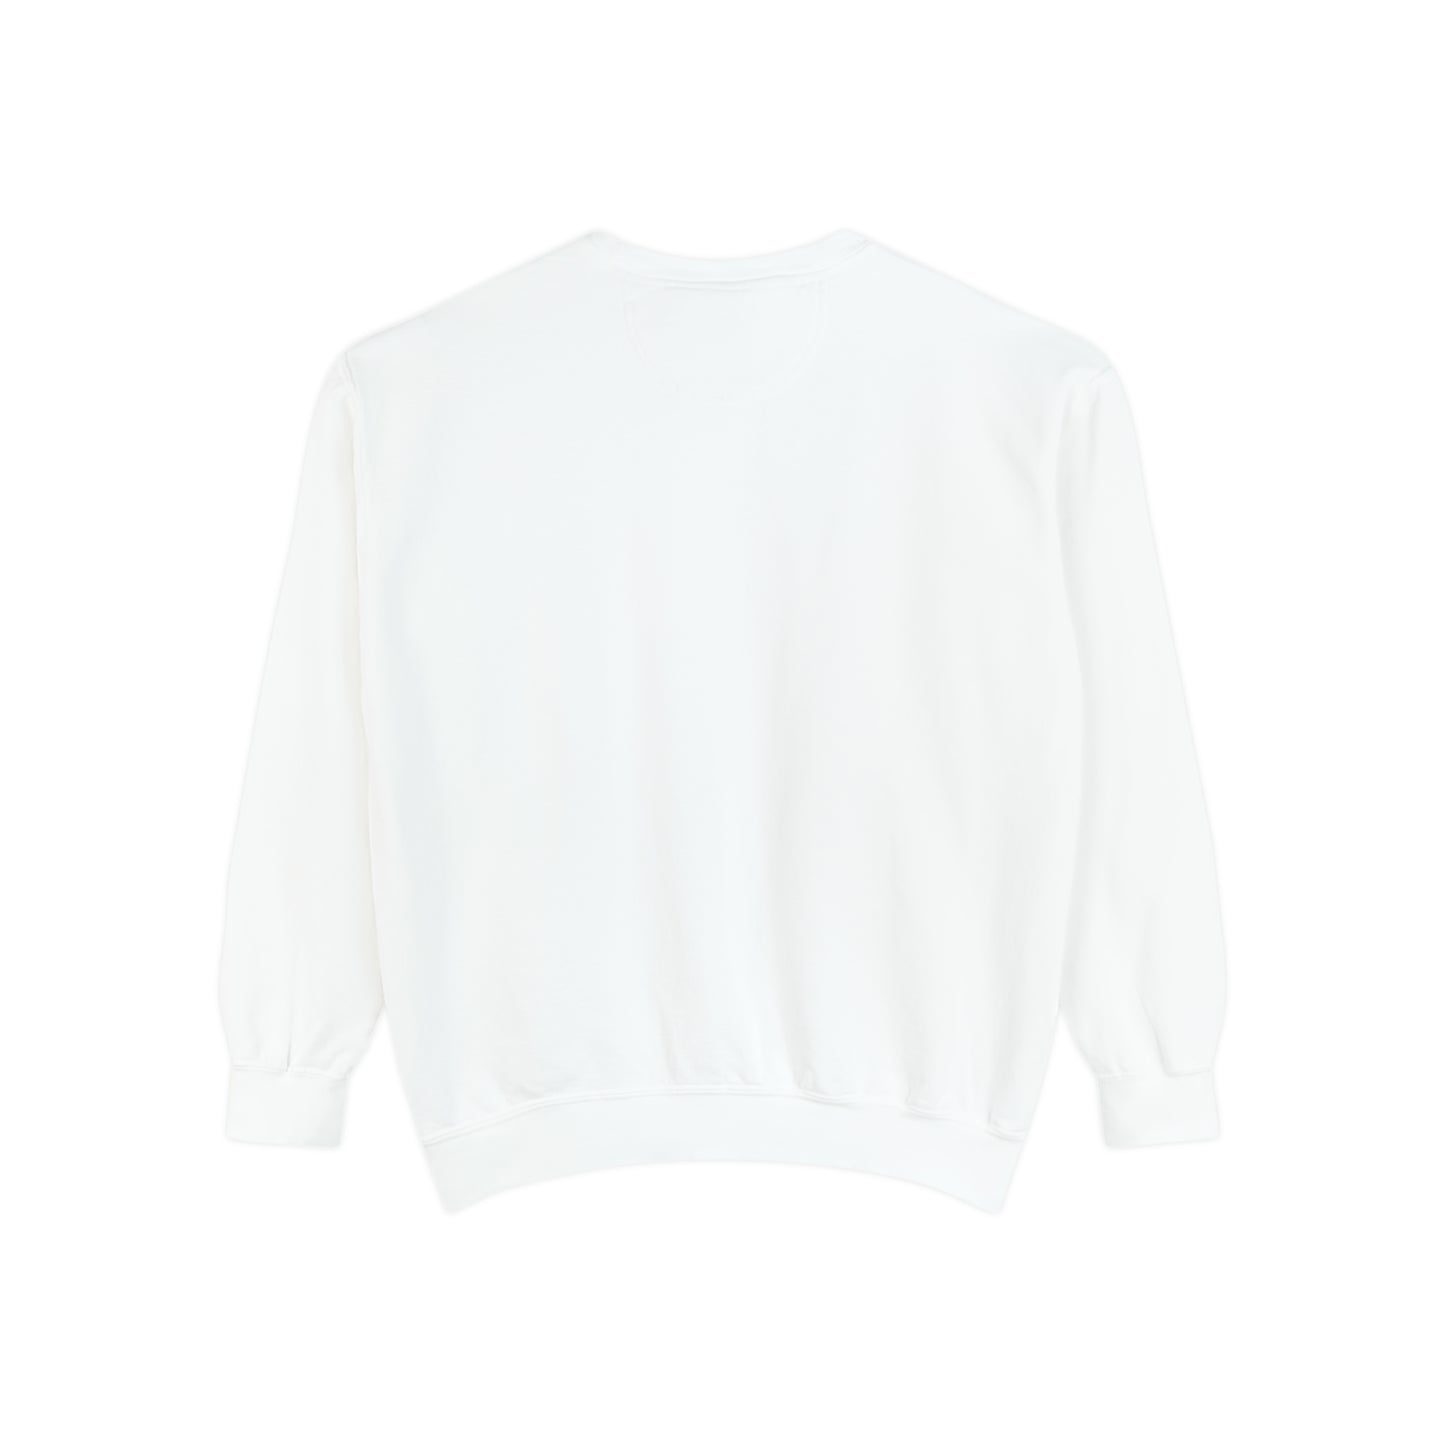 LUCKY Unisex Garment-Dyed Sweatshirt